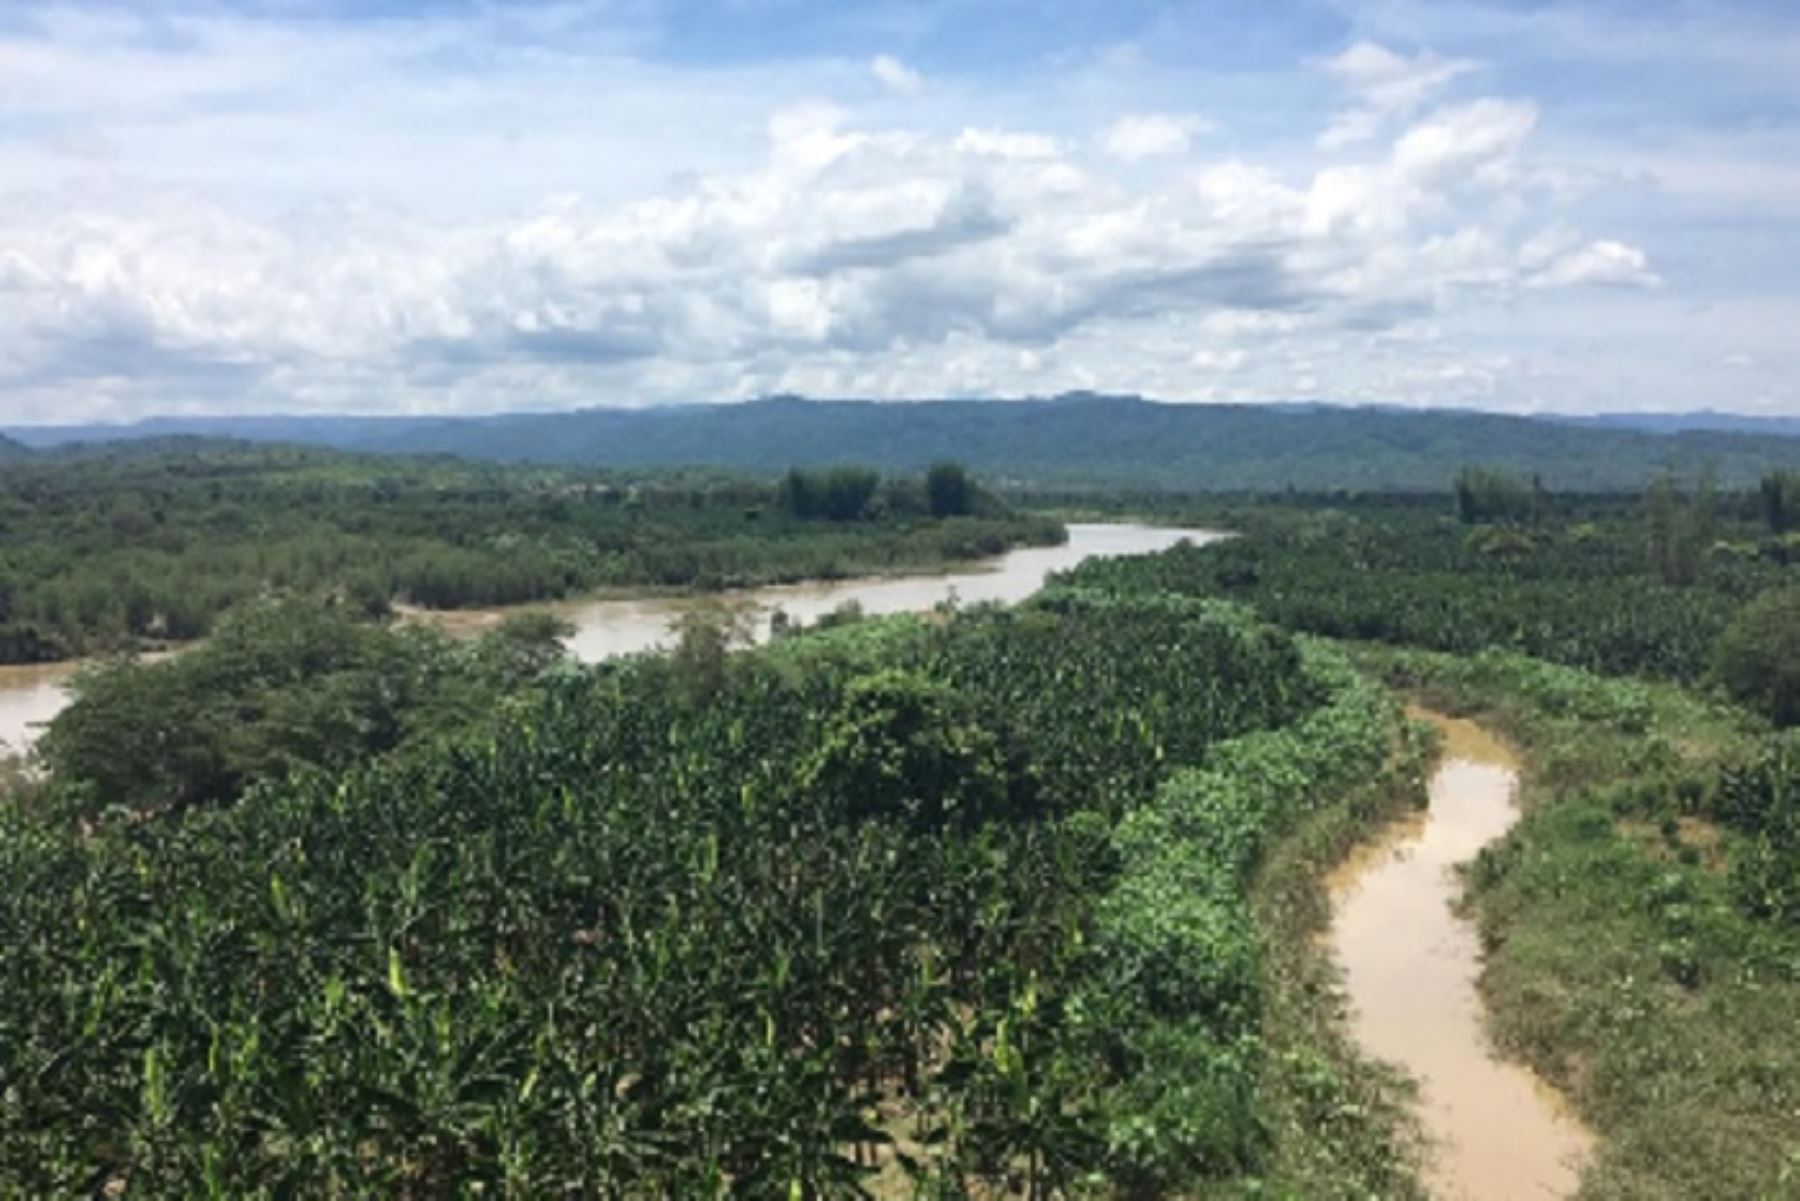 El Ministerio de Agricultura y Riego, a través del Proyecto Especial Binacional Puyango Tumbes (PEBPT), intervendrá en los puntos críticos de los ríos Zarumilla y Tumbes, además de efectuar limpieza de drenes, como parte de las acciones de prevención ante posibles desbordes que afecten a la ciudad y a los agricultores.